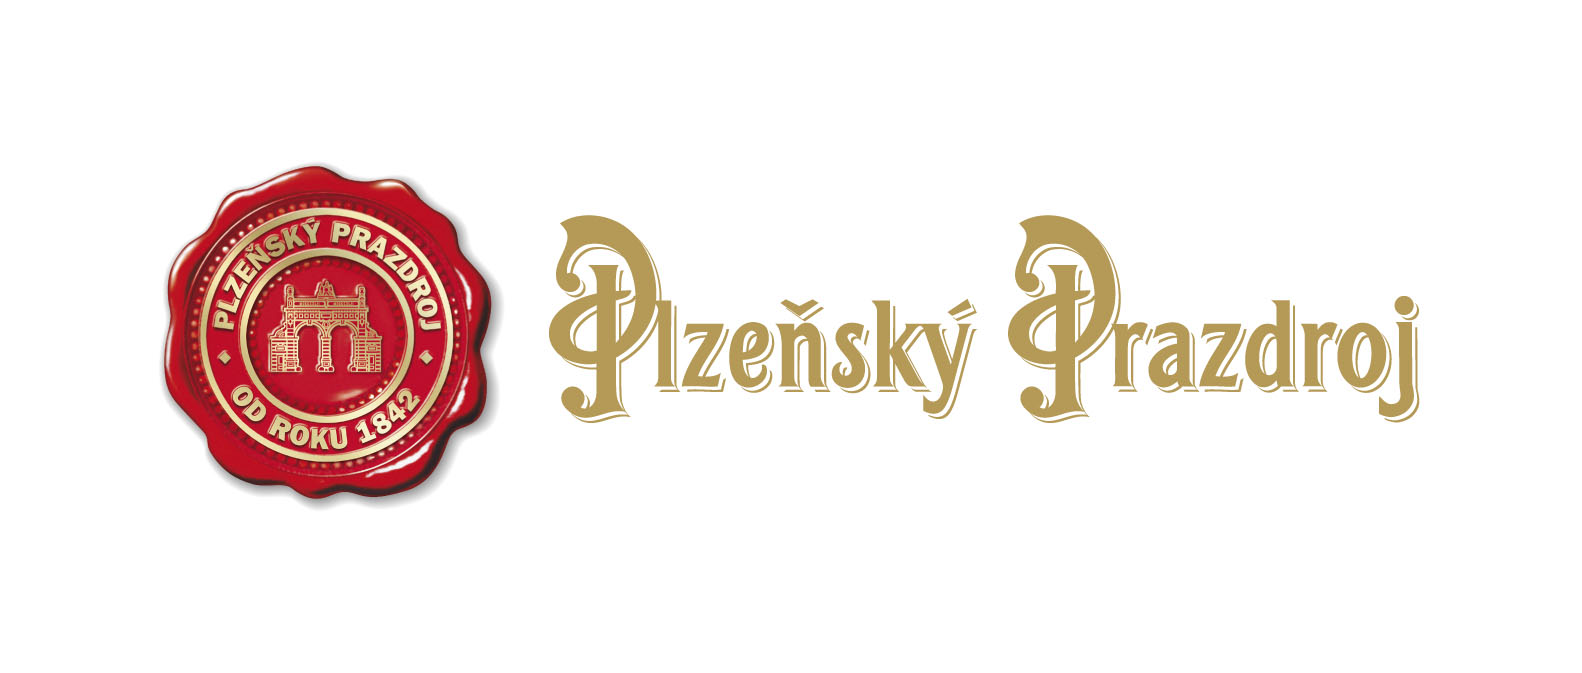 Plzeňský prozdroj